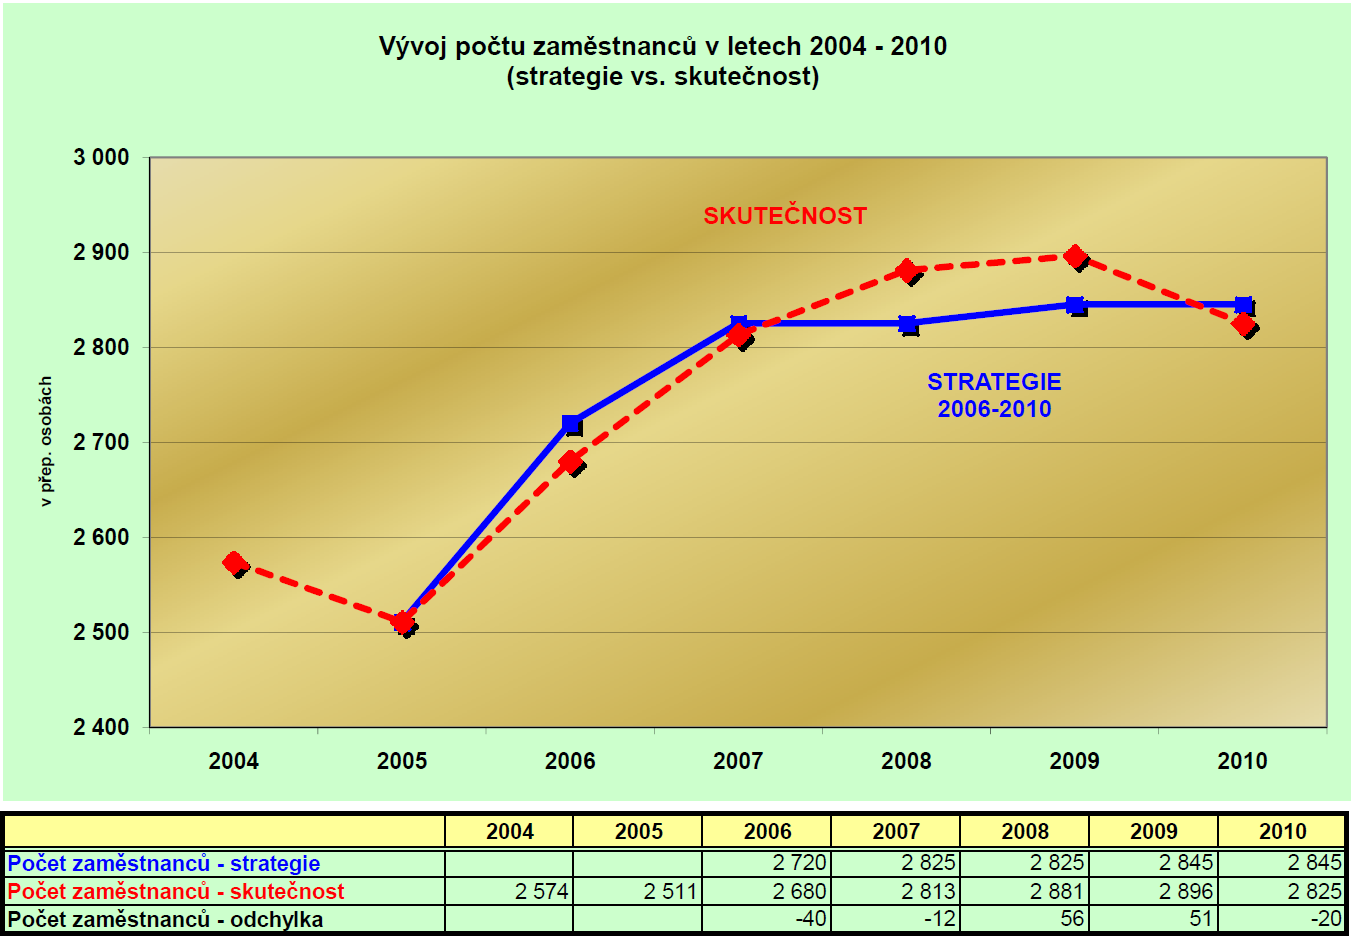 V letech 2004-2005 docházelo k postupnému snižování počtu zaměstnanců v ČT, ale vzhledem k celodennímu vysílání nových programů ČT24 a ČT4, vznikla potřeba přijímat nové zaměstnance - růst v letech